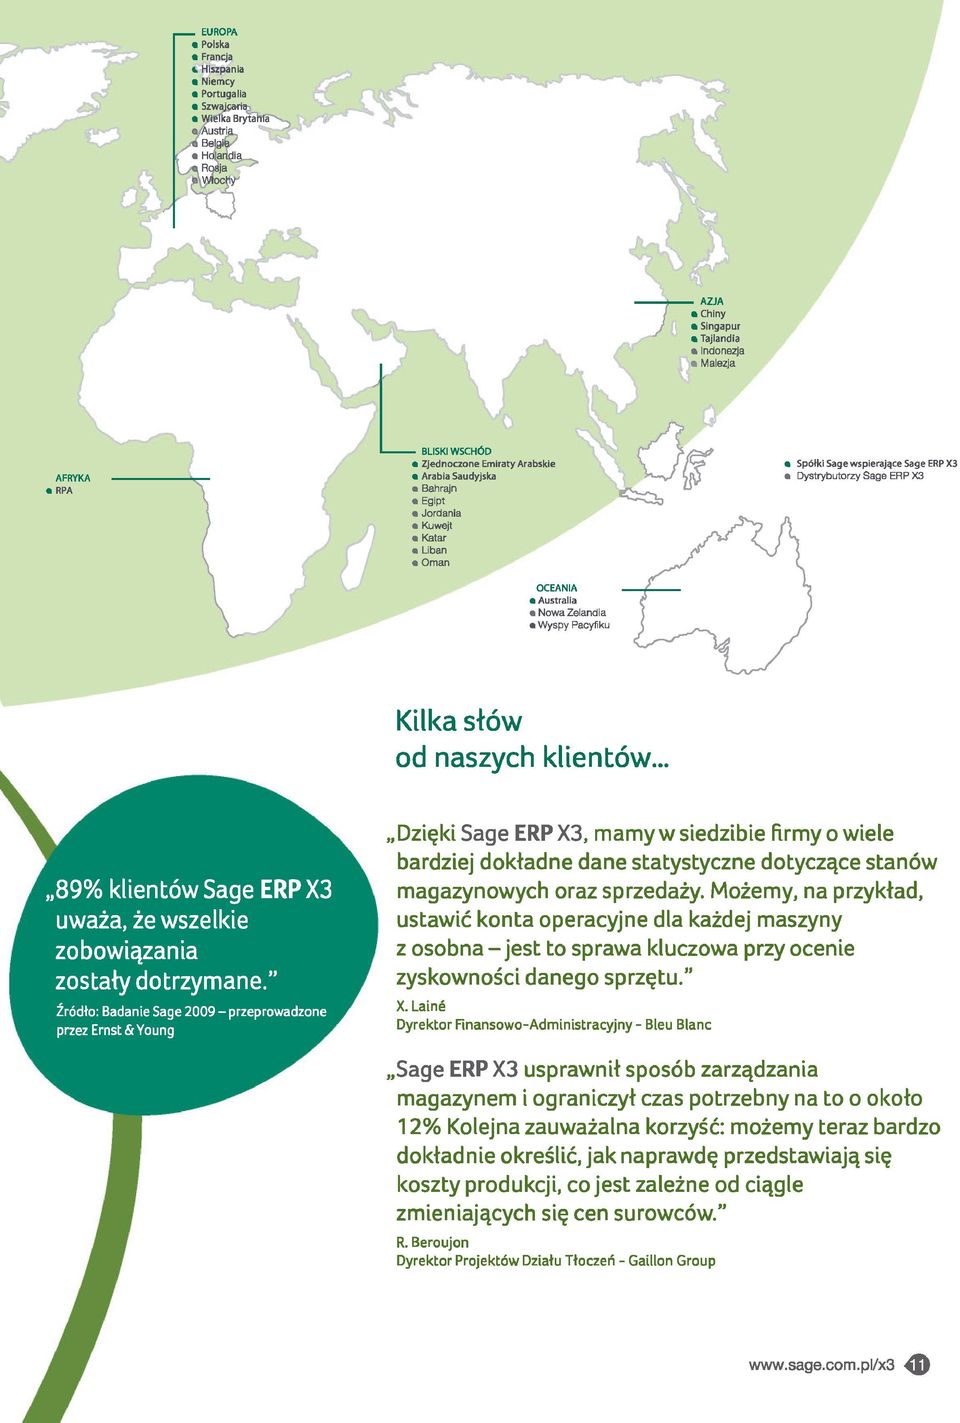 OCEANIA Australia Nowa Zelandia Wyspy Pacyfiku Spółki Sage wspierające Sag e ERP X3 Dystrybutorzy Sage ERP X3 Kilka słów od naszych klientów.